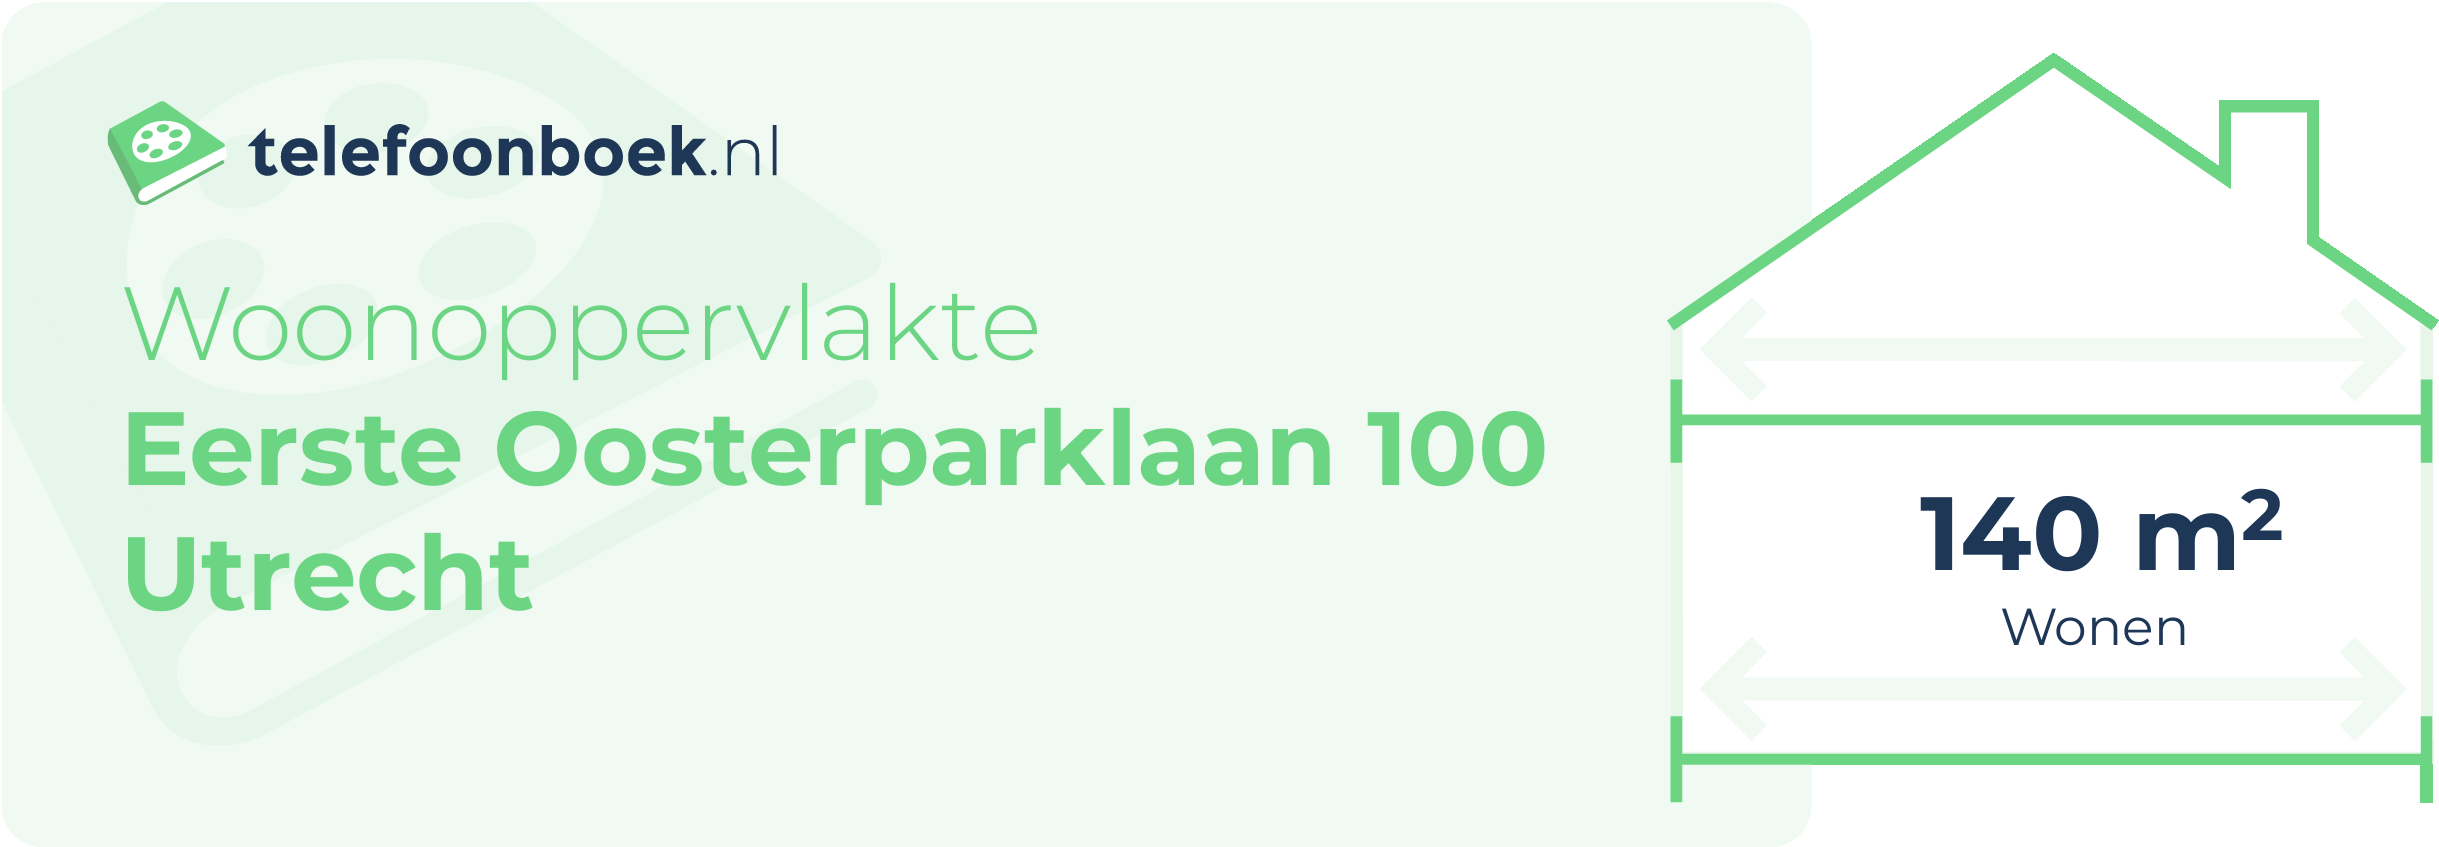 Woonoppervlakte Eerste Oosterparklaan 100 Utrecht